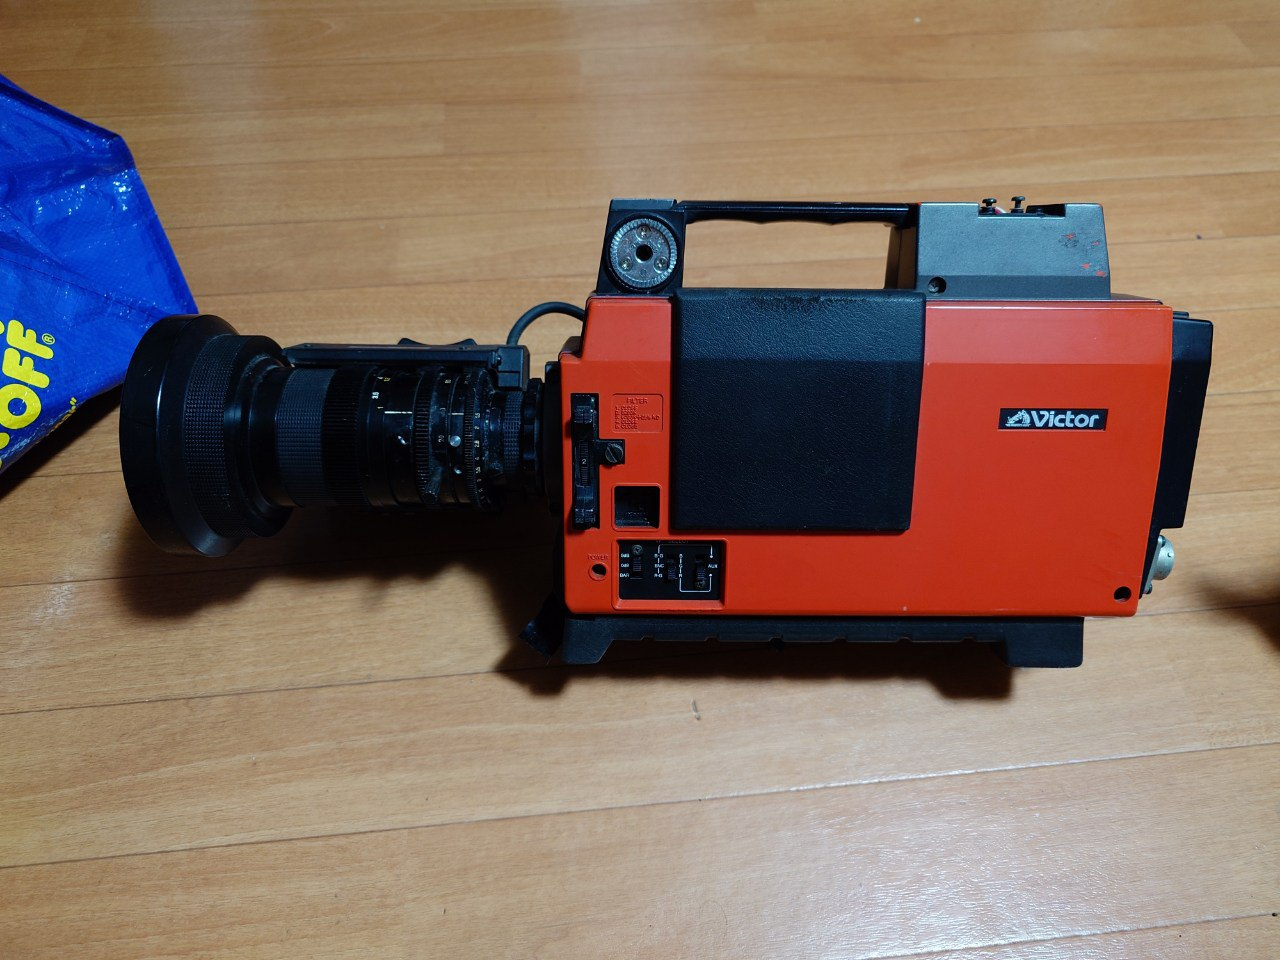 Японский видеомагнитофон! Делаем ретро-фото в стиле VHS на смартфон - 19